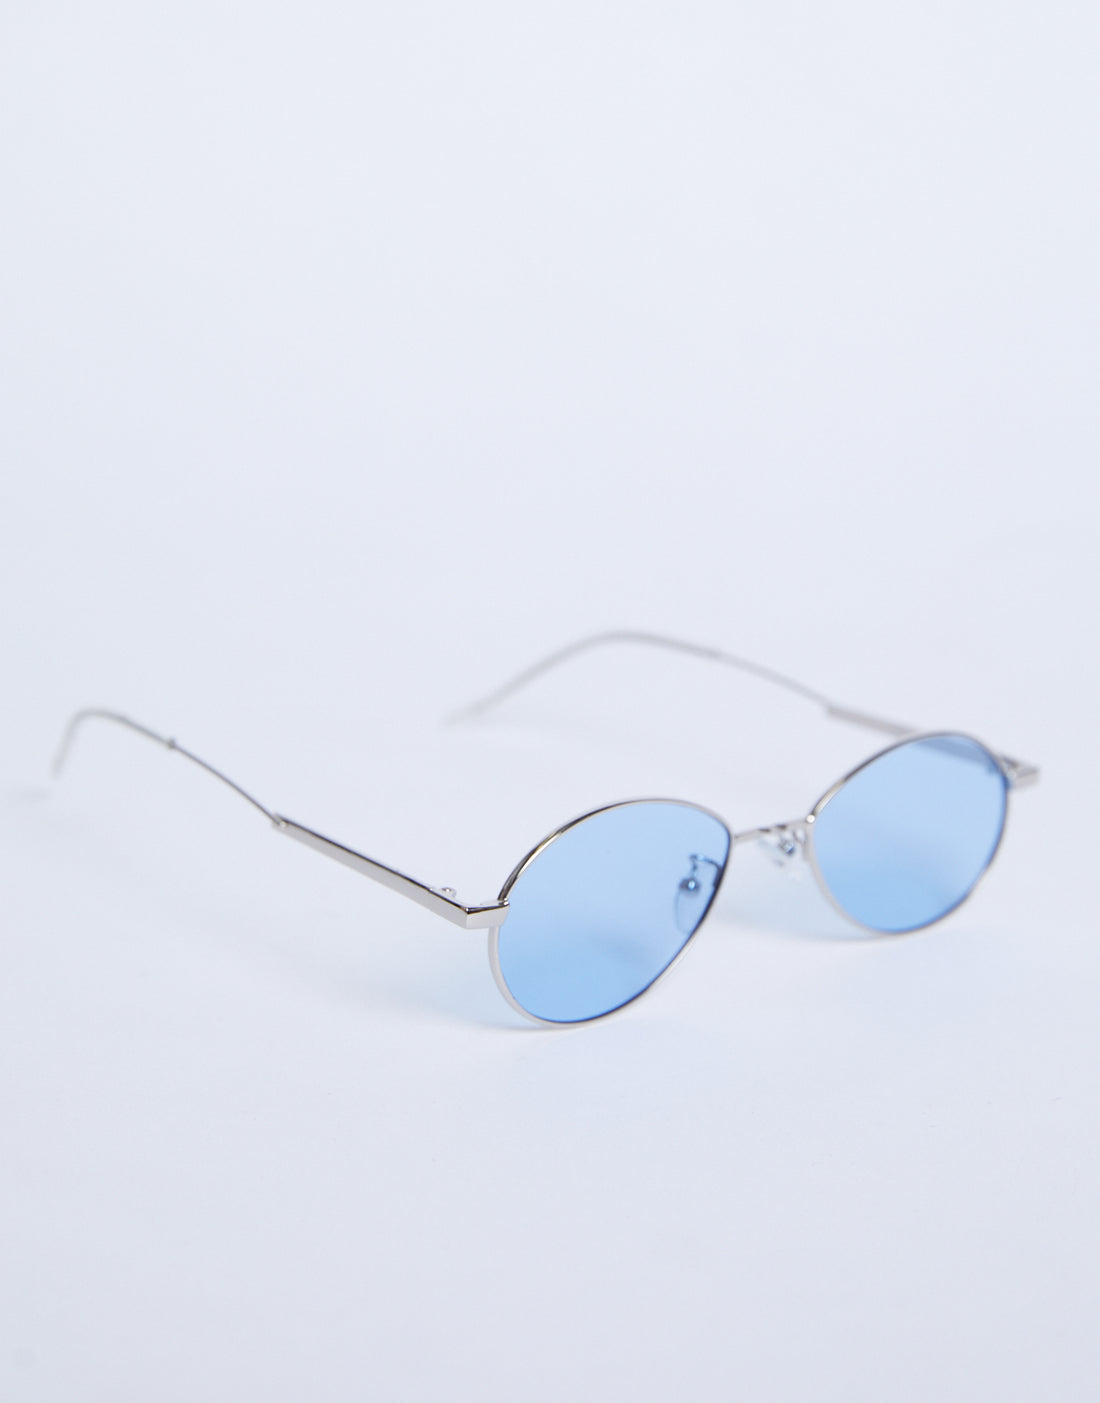 Retro Days Colored Sunglasses Accessories -2020AVE